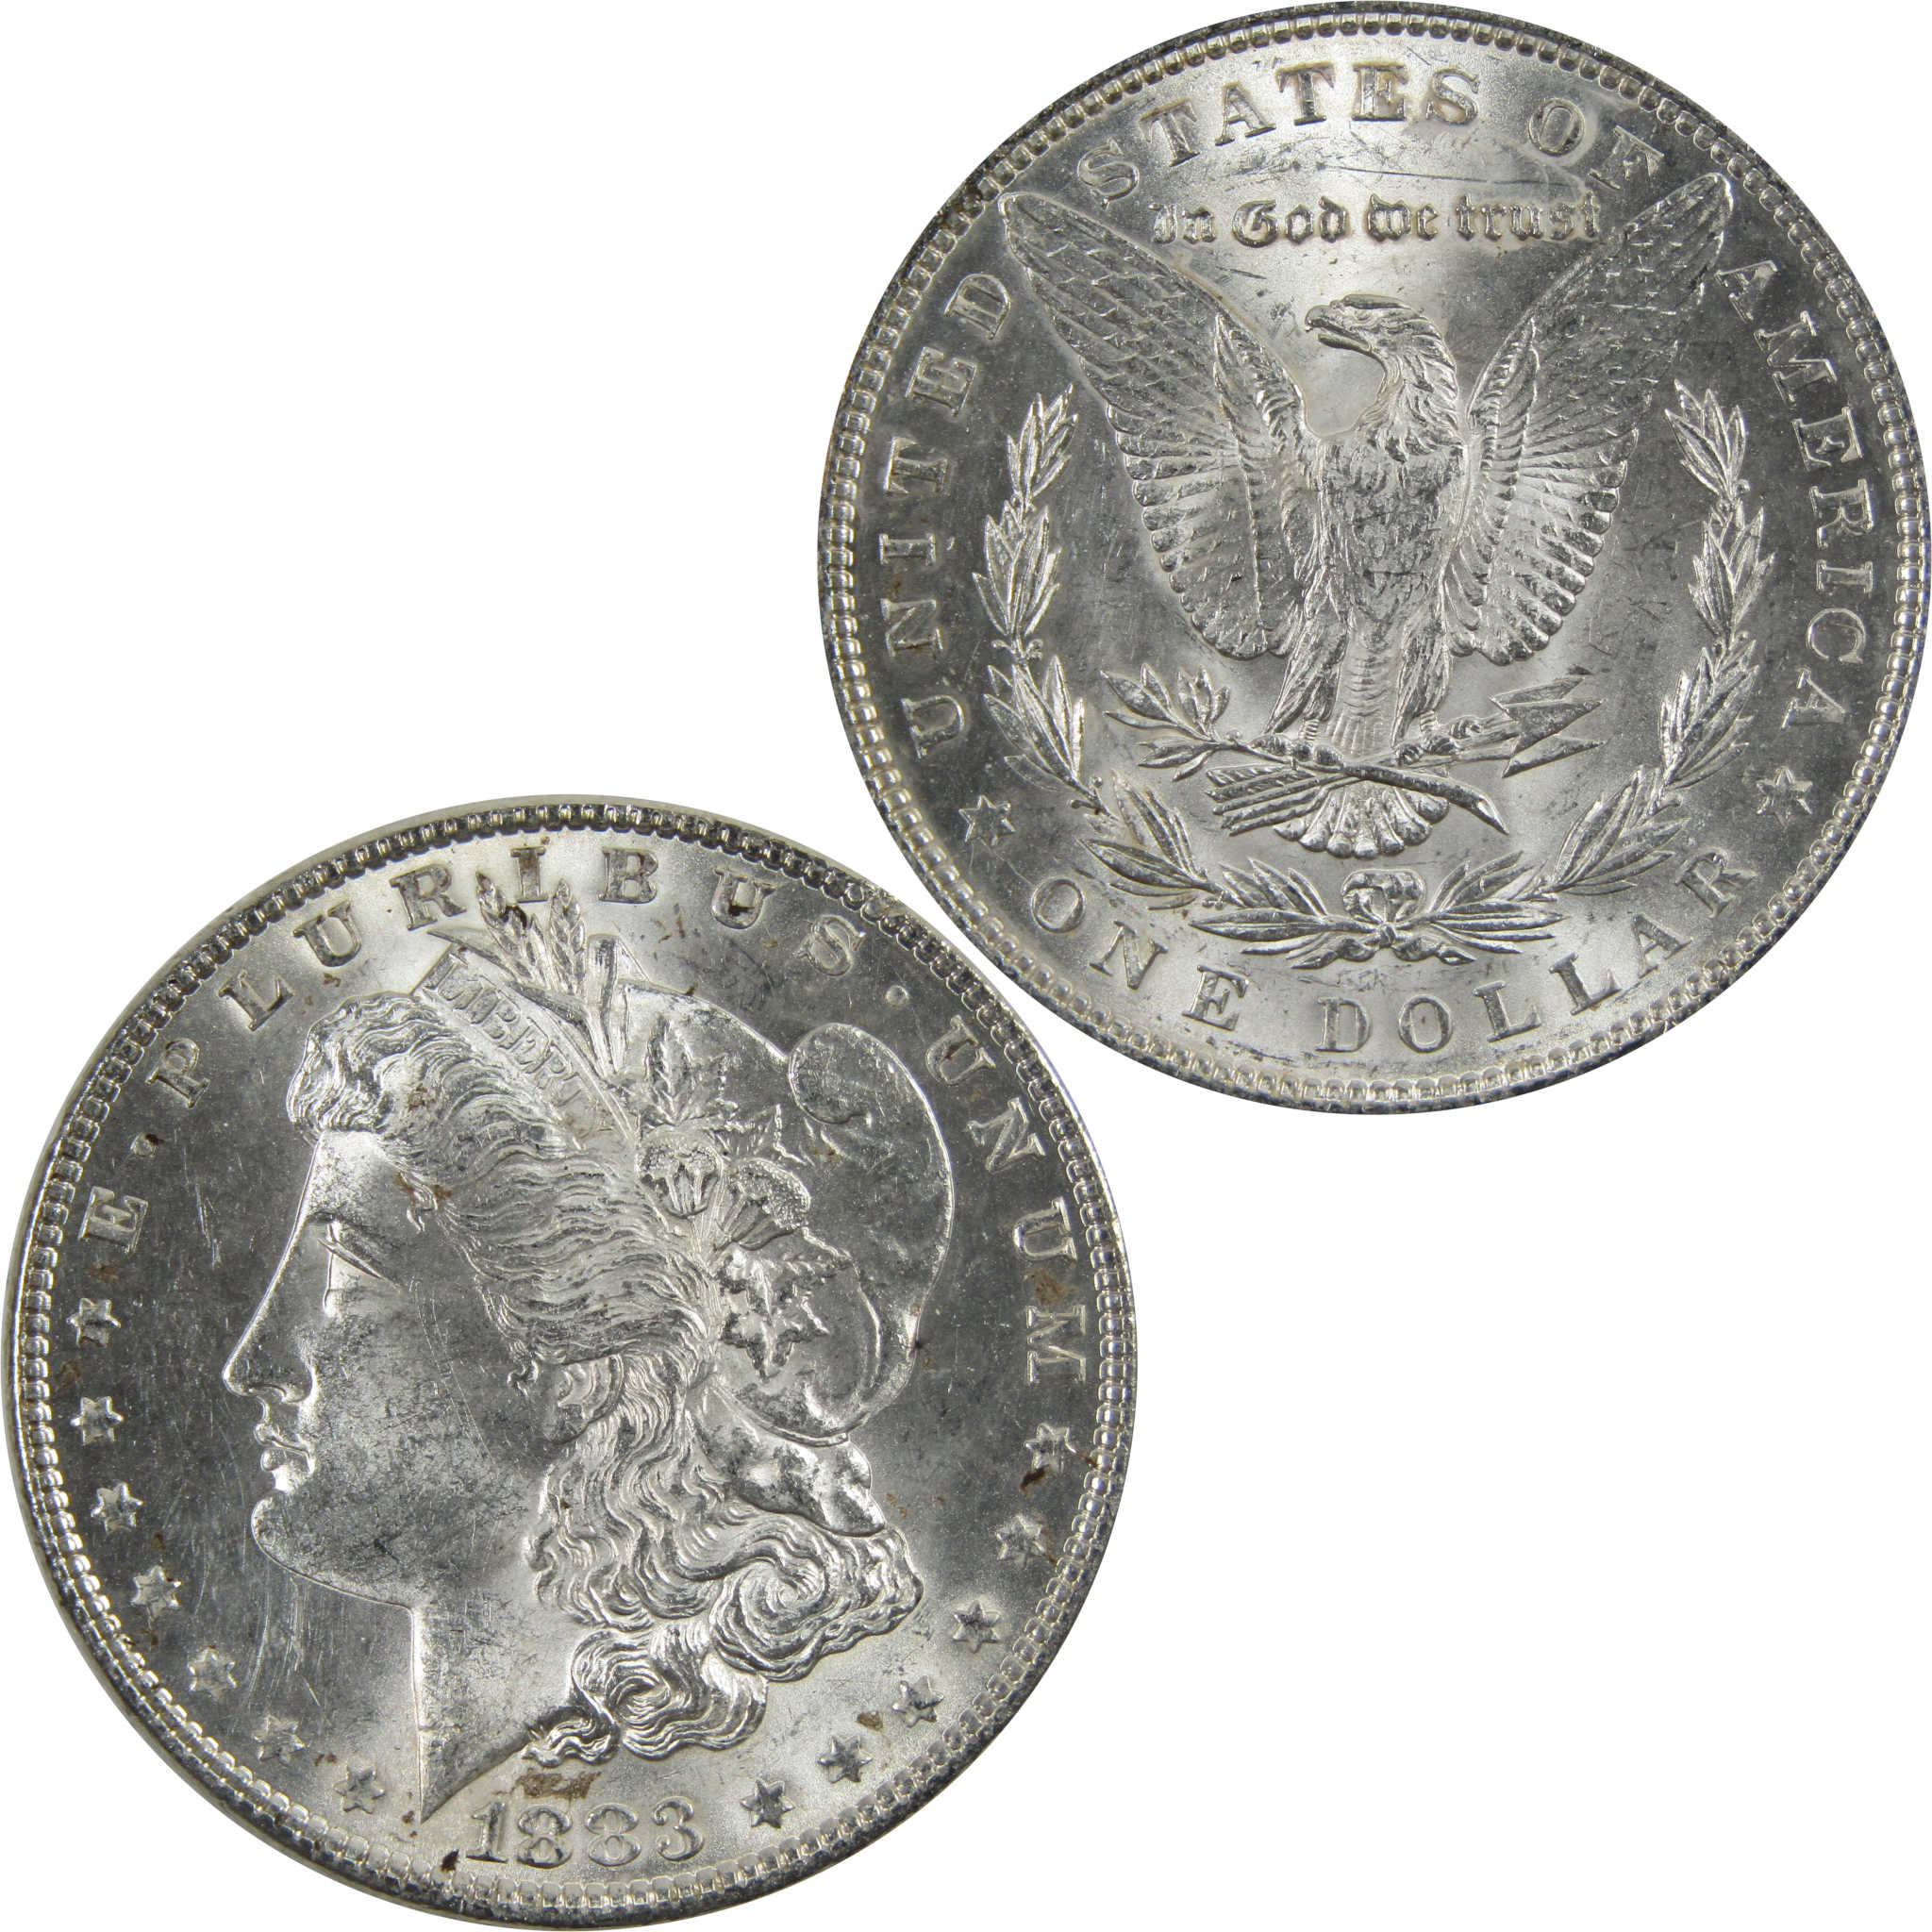 1883 Morgan Dollar BU Uncirculated 90% Silver $1 Coin SKU:I5169 - Morgan coin - Morgan silver dollar - Morgan silver dollar for sale - Profile Coins &amp; Collectibles